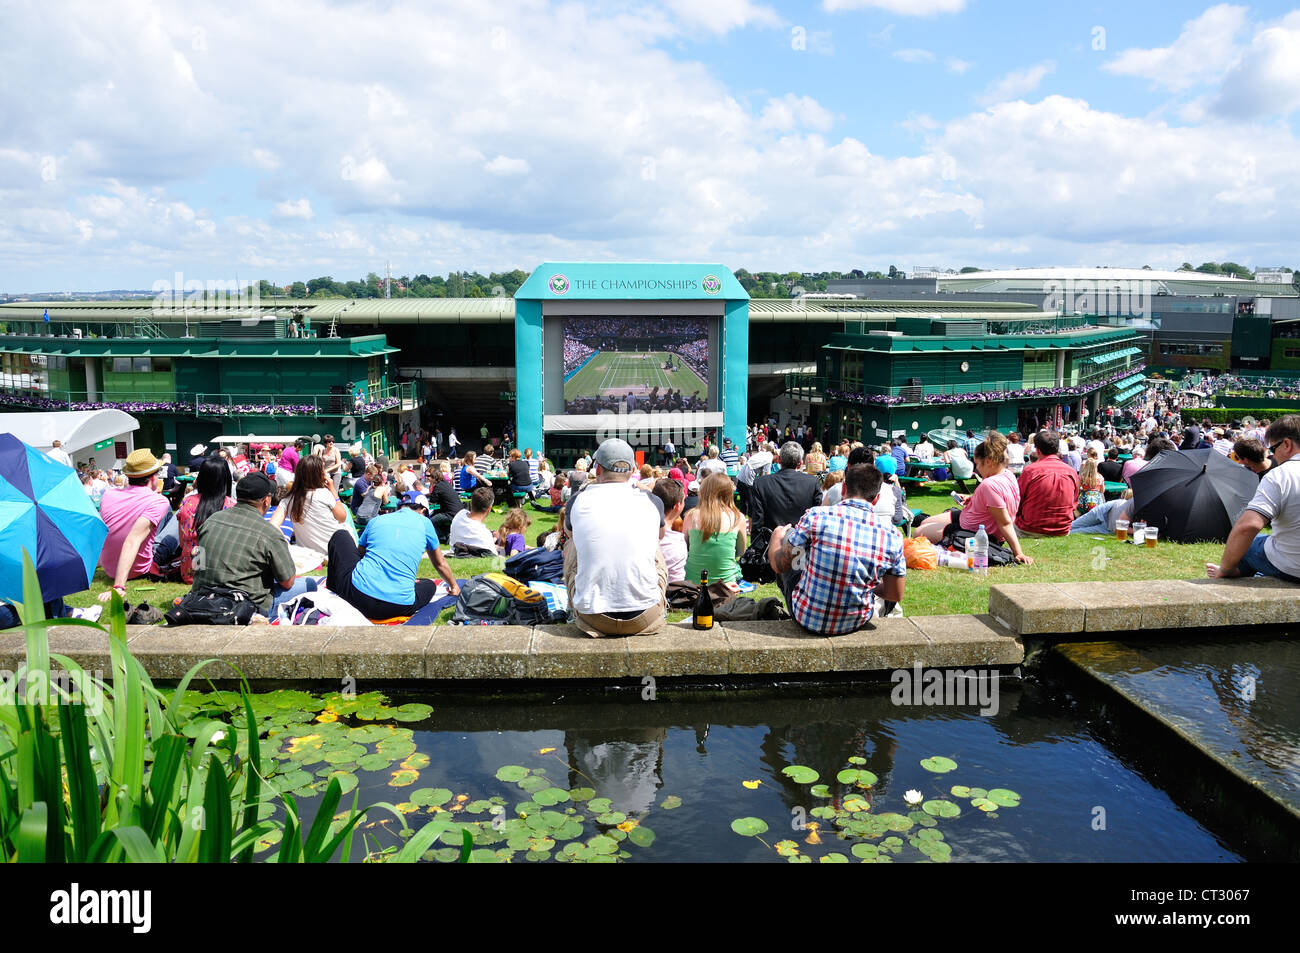 Grand écran de télévision à Aorangi terrasse, les championnats 2012, Wimbledon, Merton Borough, Greater London, Angleterre, Royaume-Uni Banque D'Images